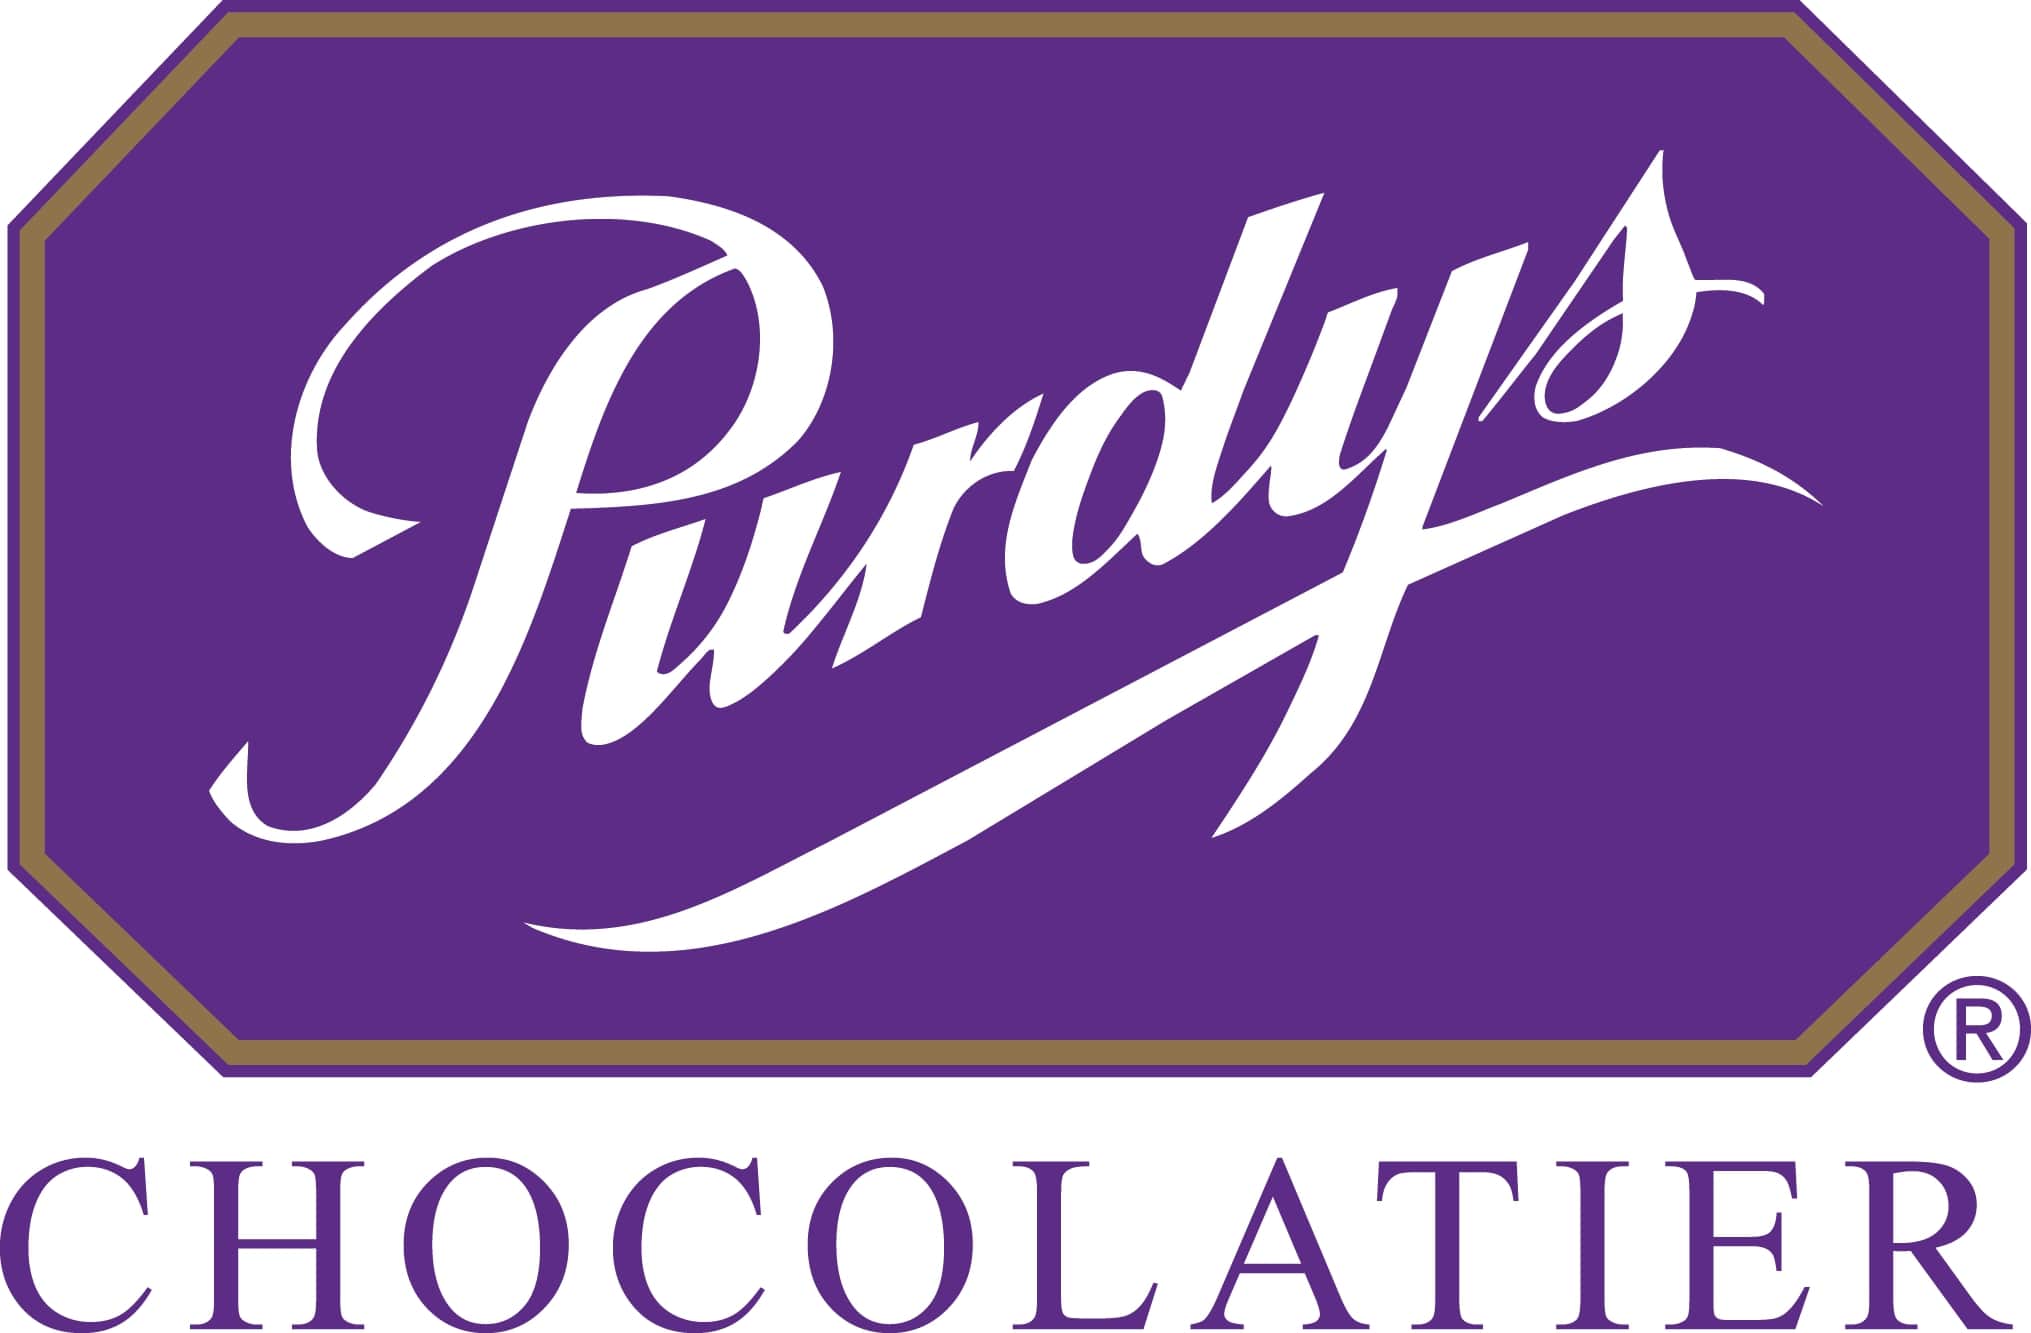 Purdys Chocolatier logo